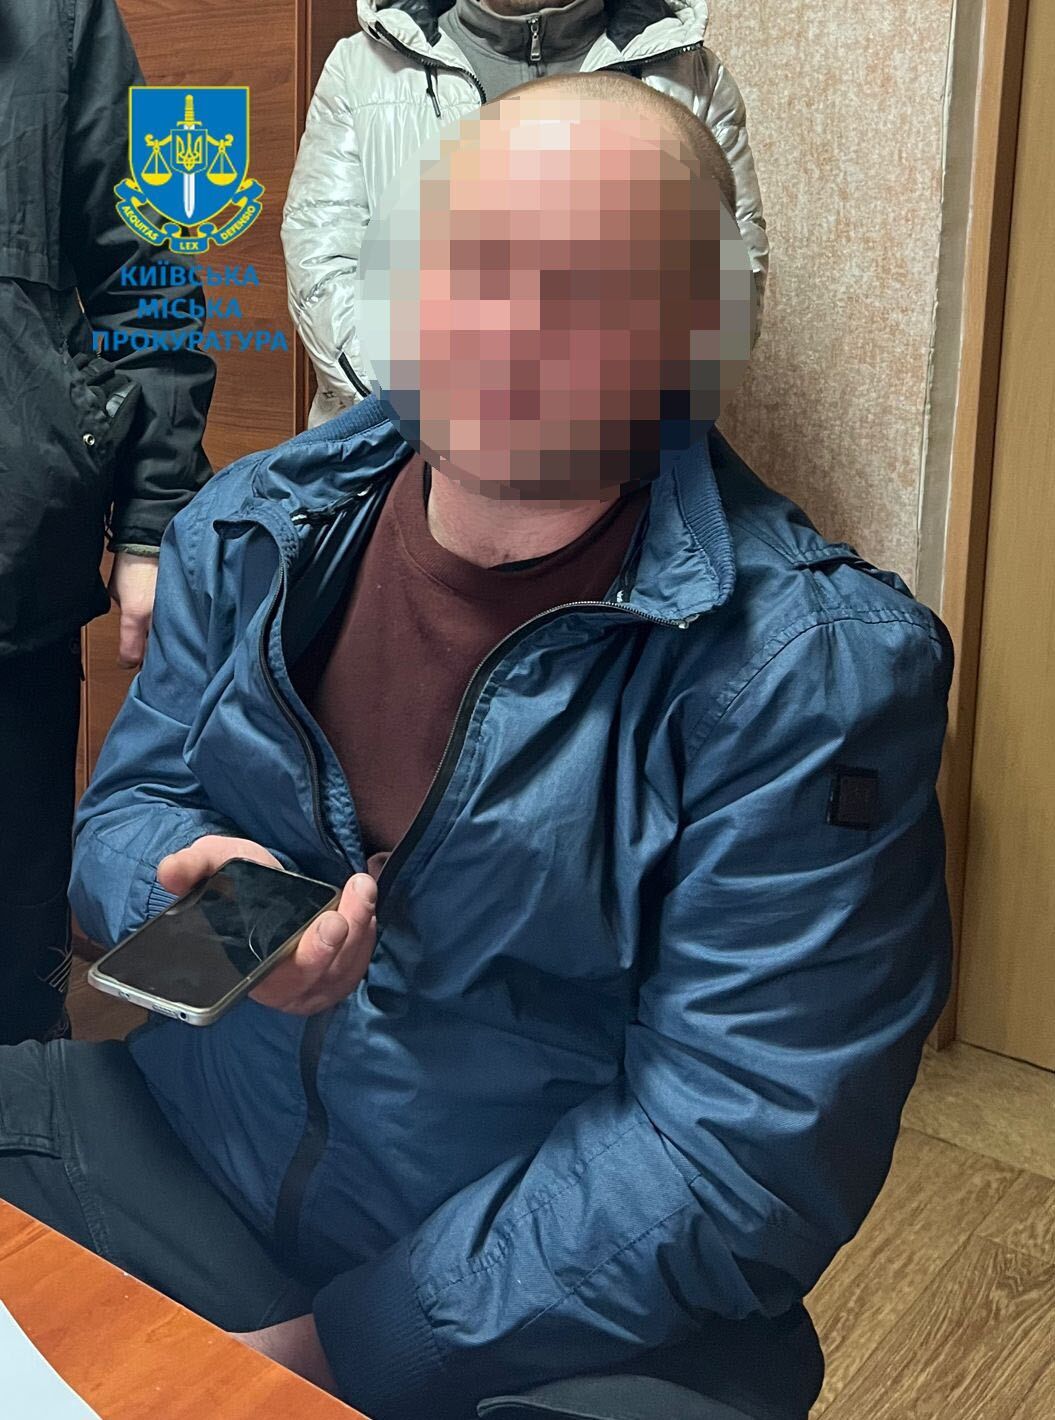 Надсилав доньці знайомої свої інтимні фото: у Києві суд виніс вирок чоловіку, який розбещував дитину